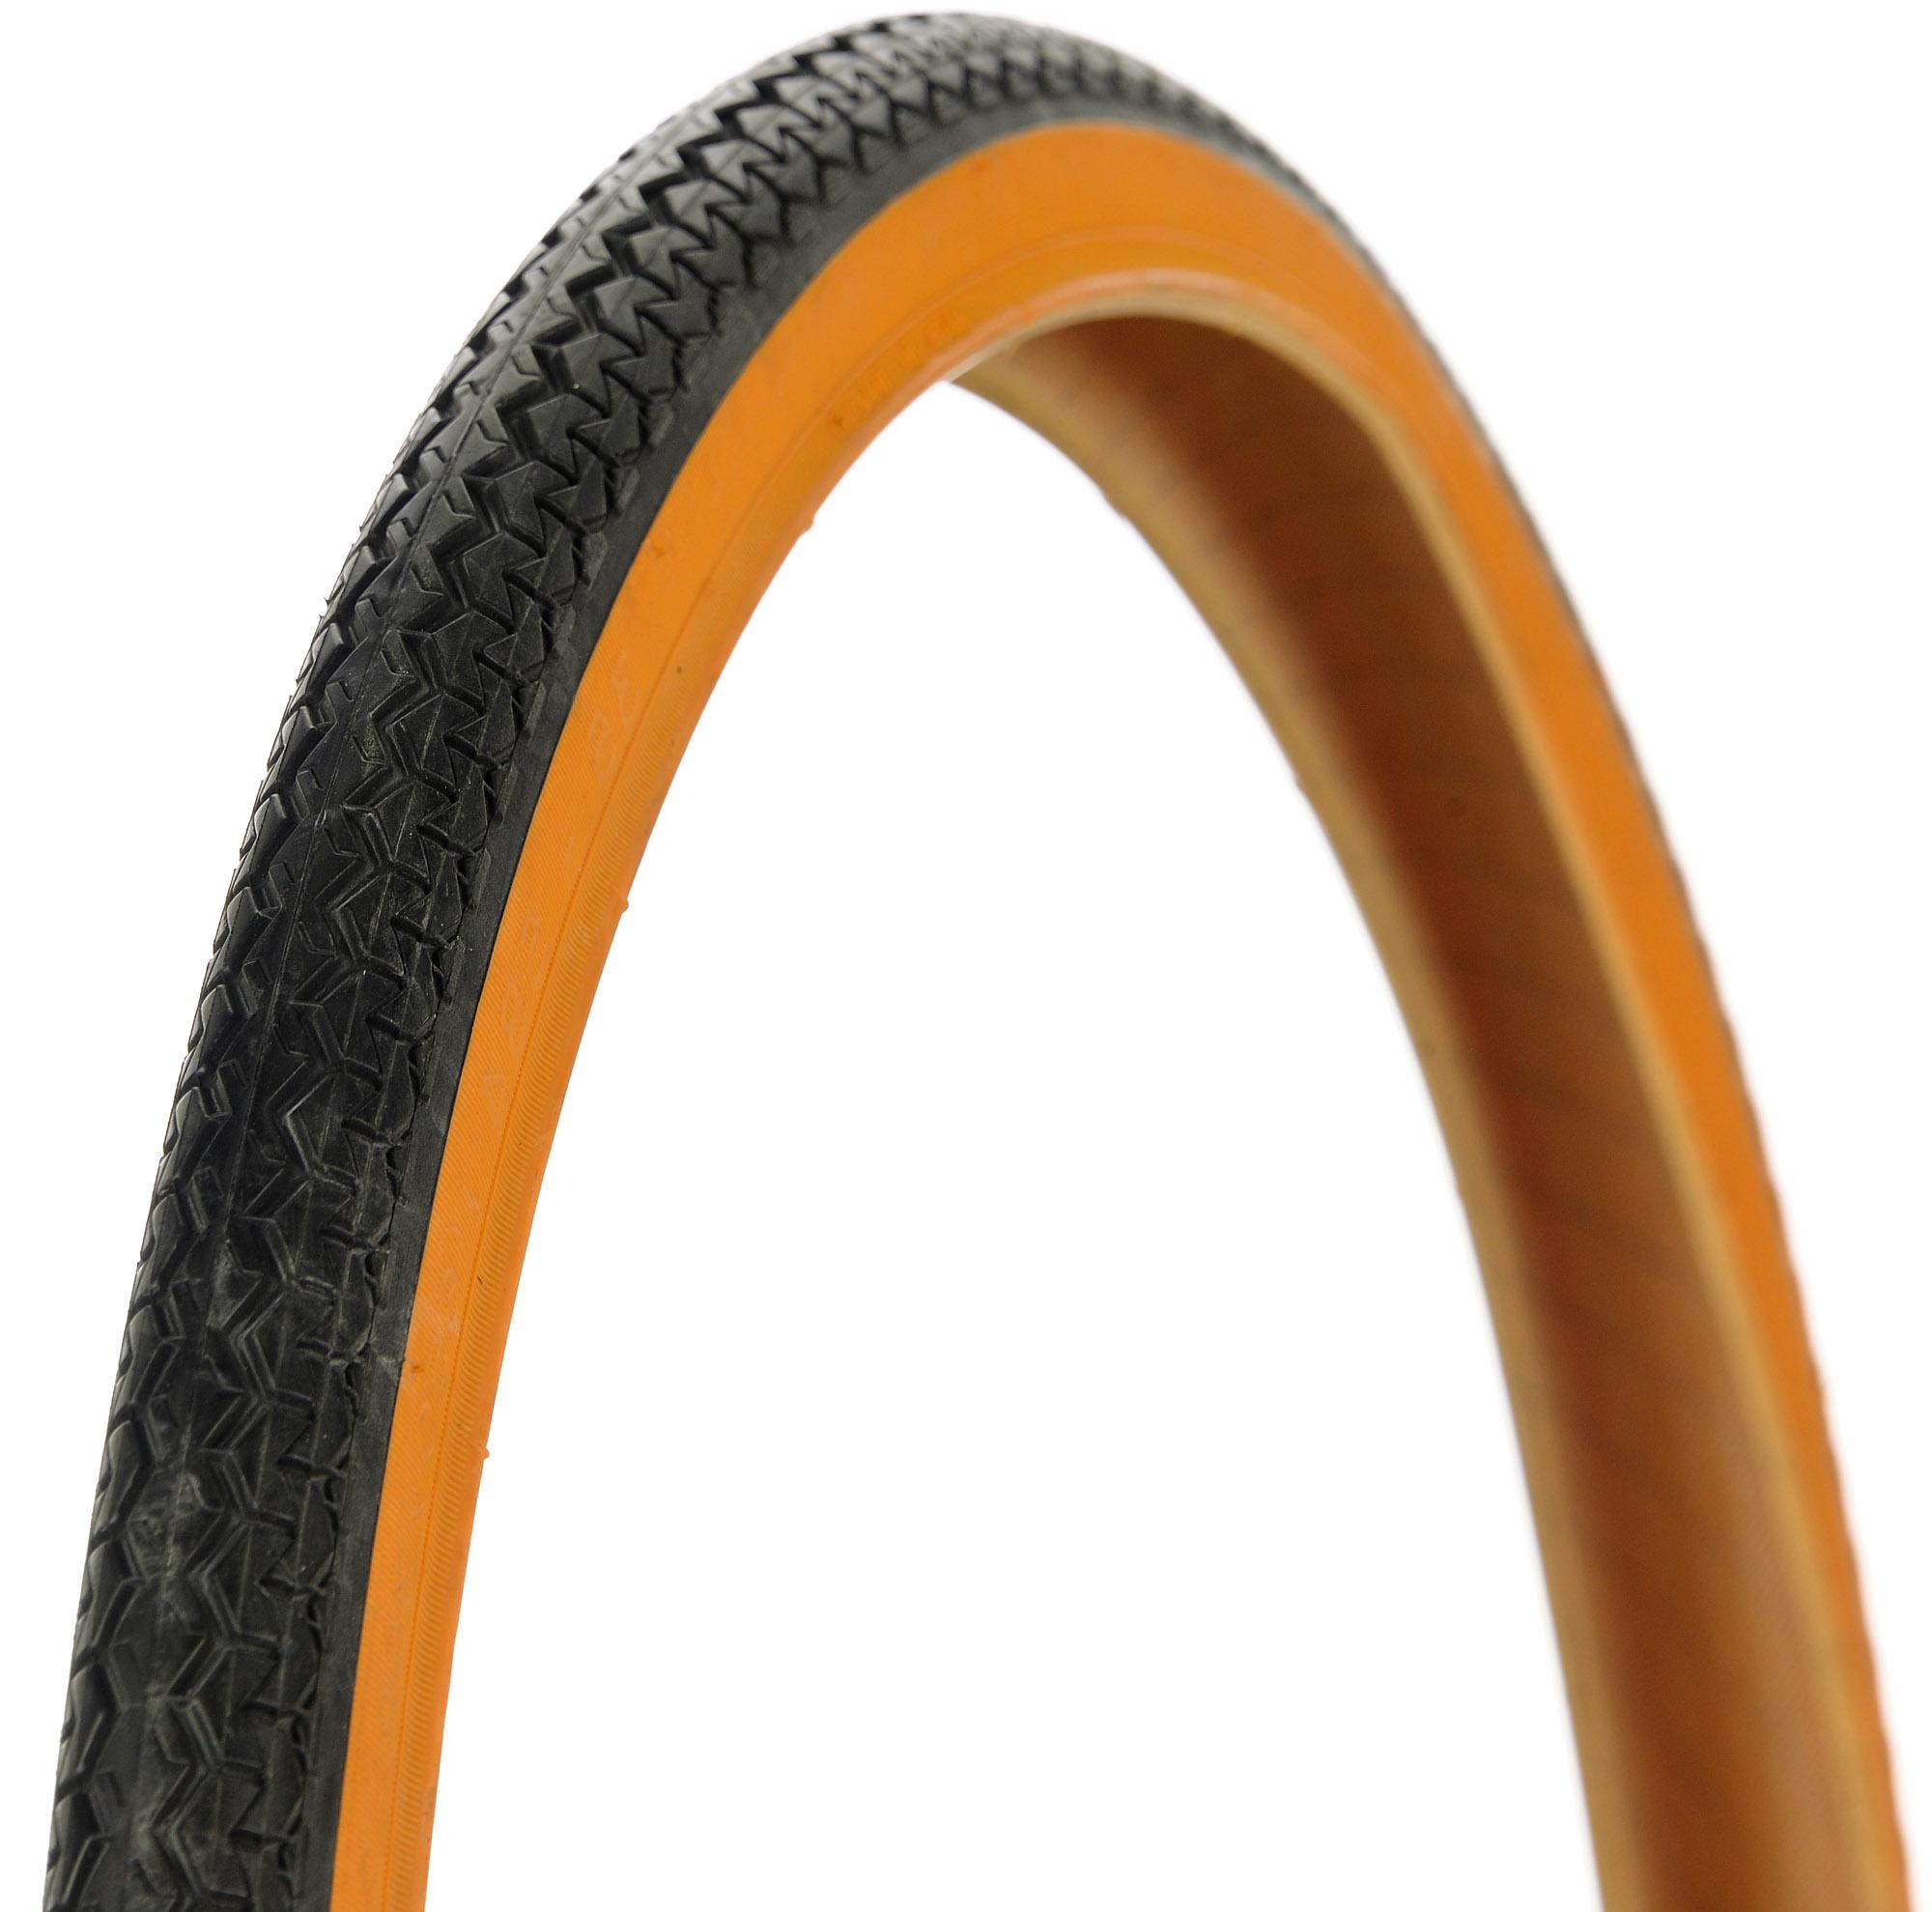 Michelin World Tour Bike Tyre - Black/tan Wall